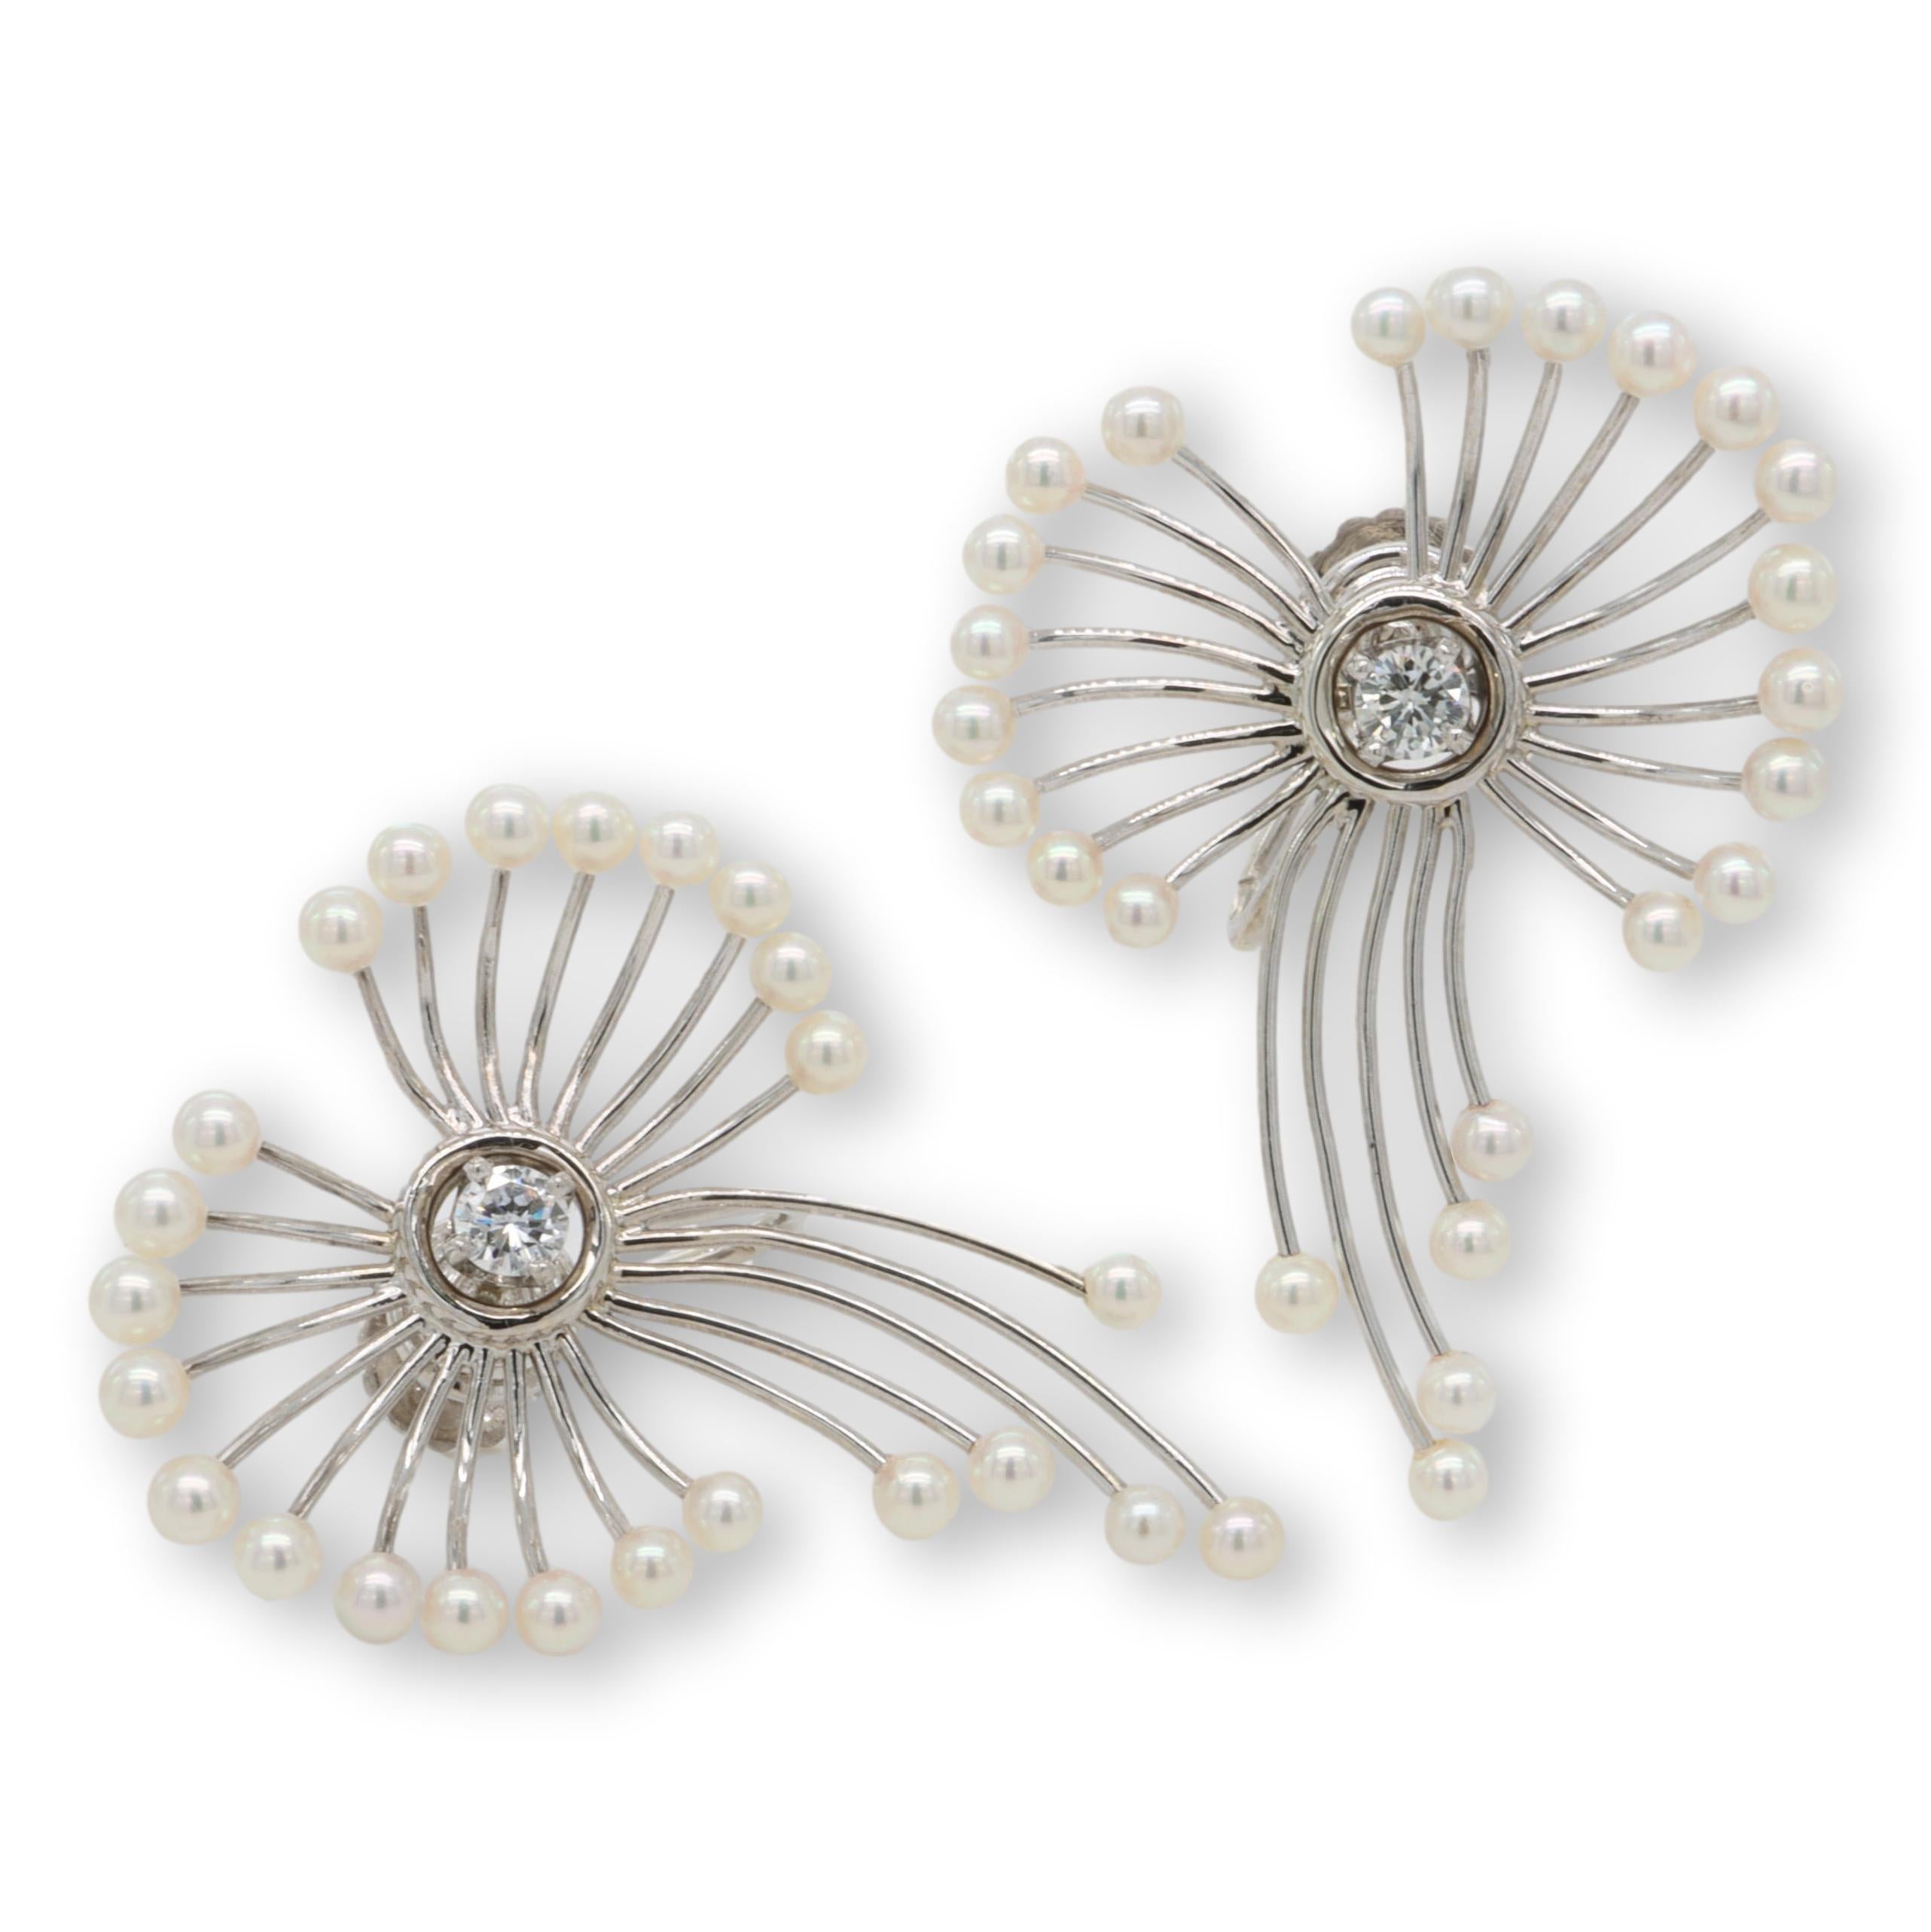 Paire de boucles d'oreilles vintage en or blanc 14 carats, ornées de 2 diamants ronds de taille brillant et de 48 perles de rocaille Akoya de 2,6-2,8 mm au lustre rose, dans un design ouvert en forme de fleur. Les deux boucles d'oreilles ont un